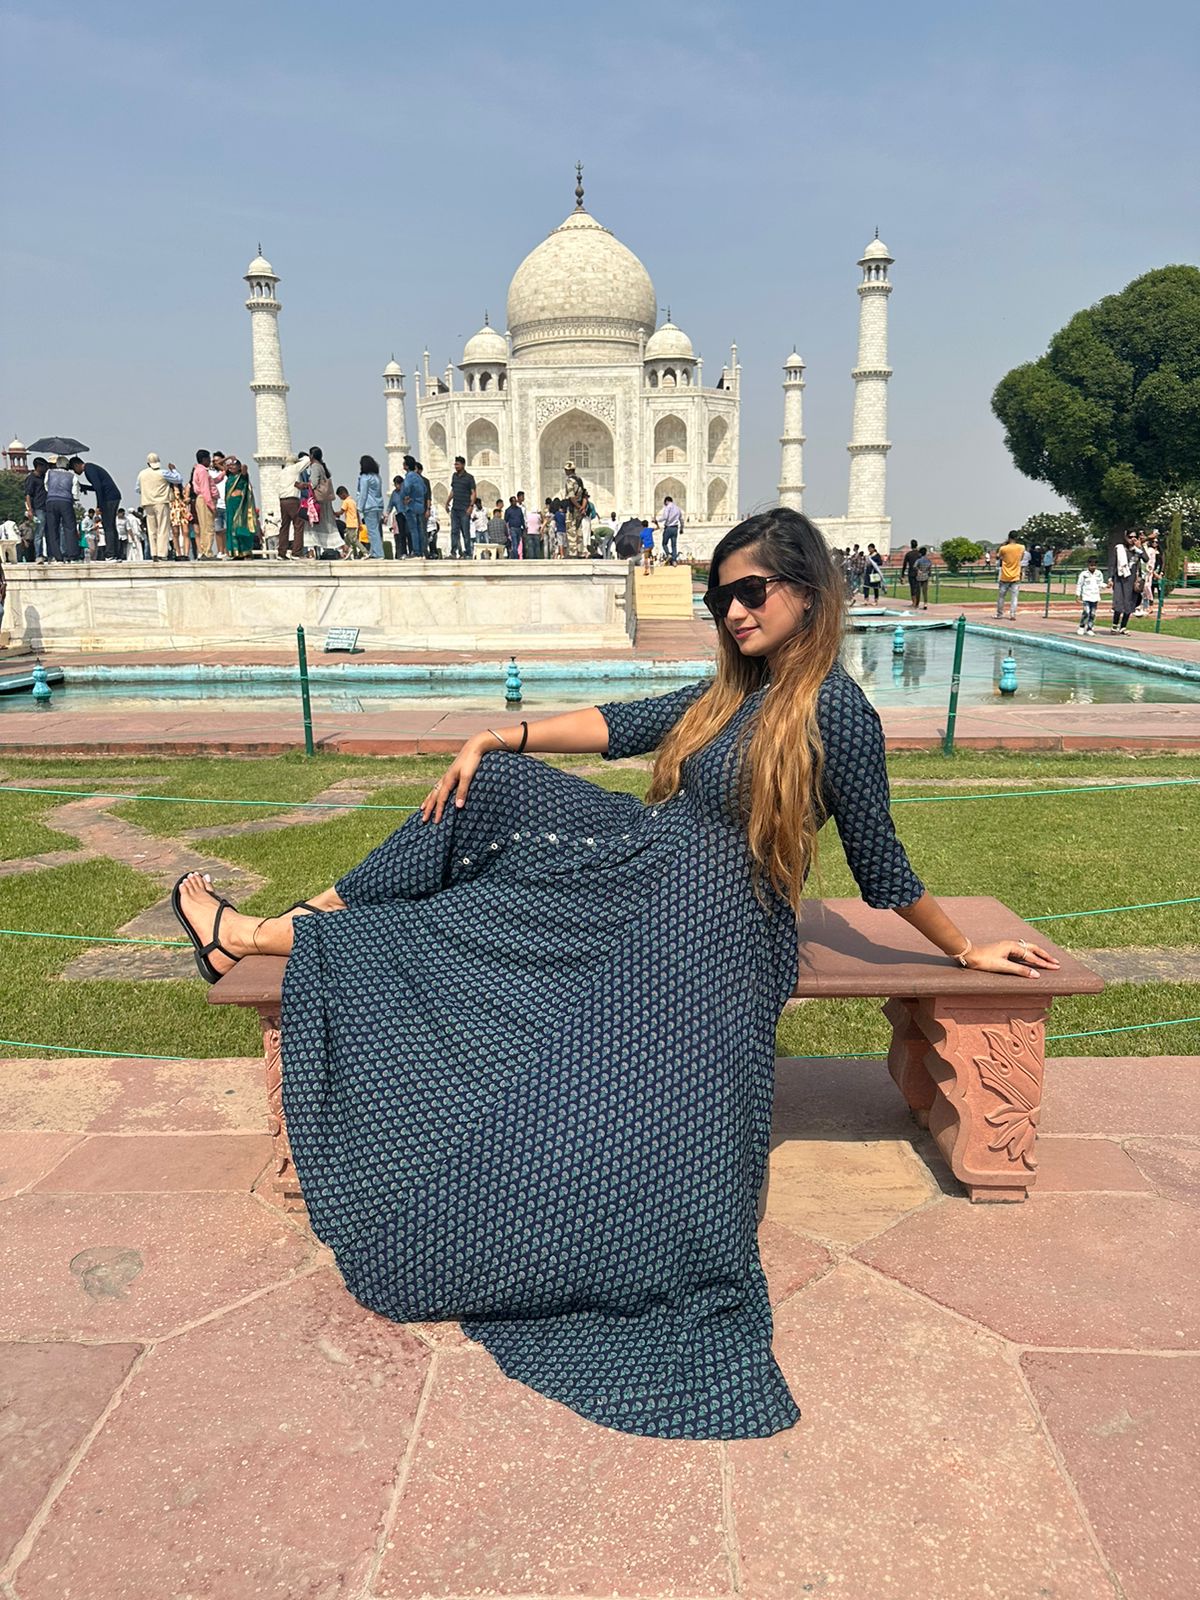 Taj Mahal history